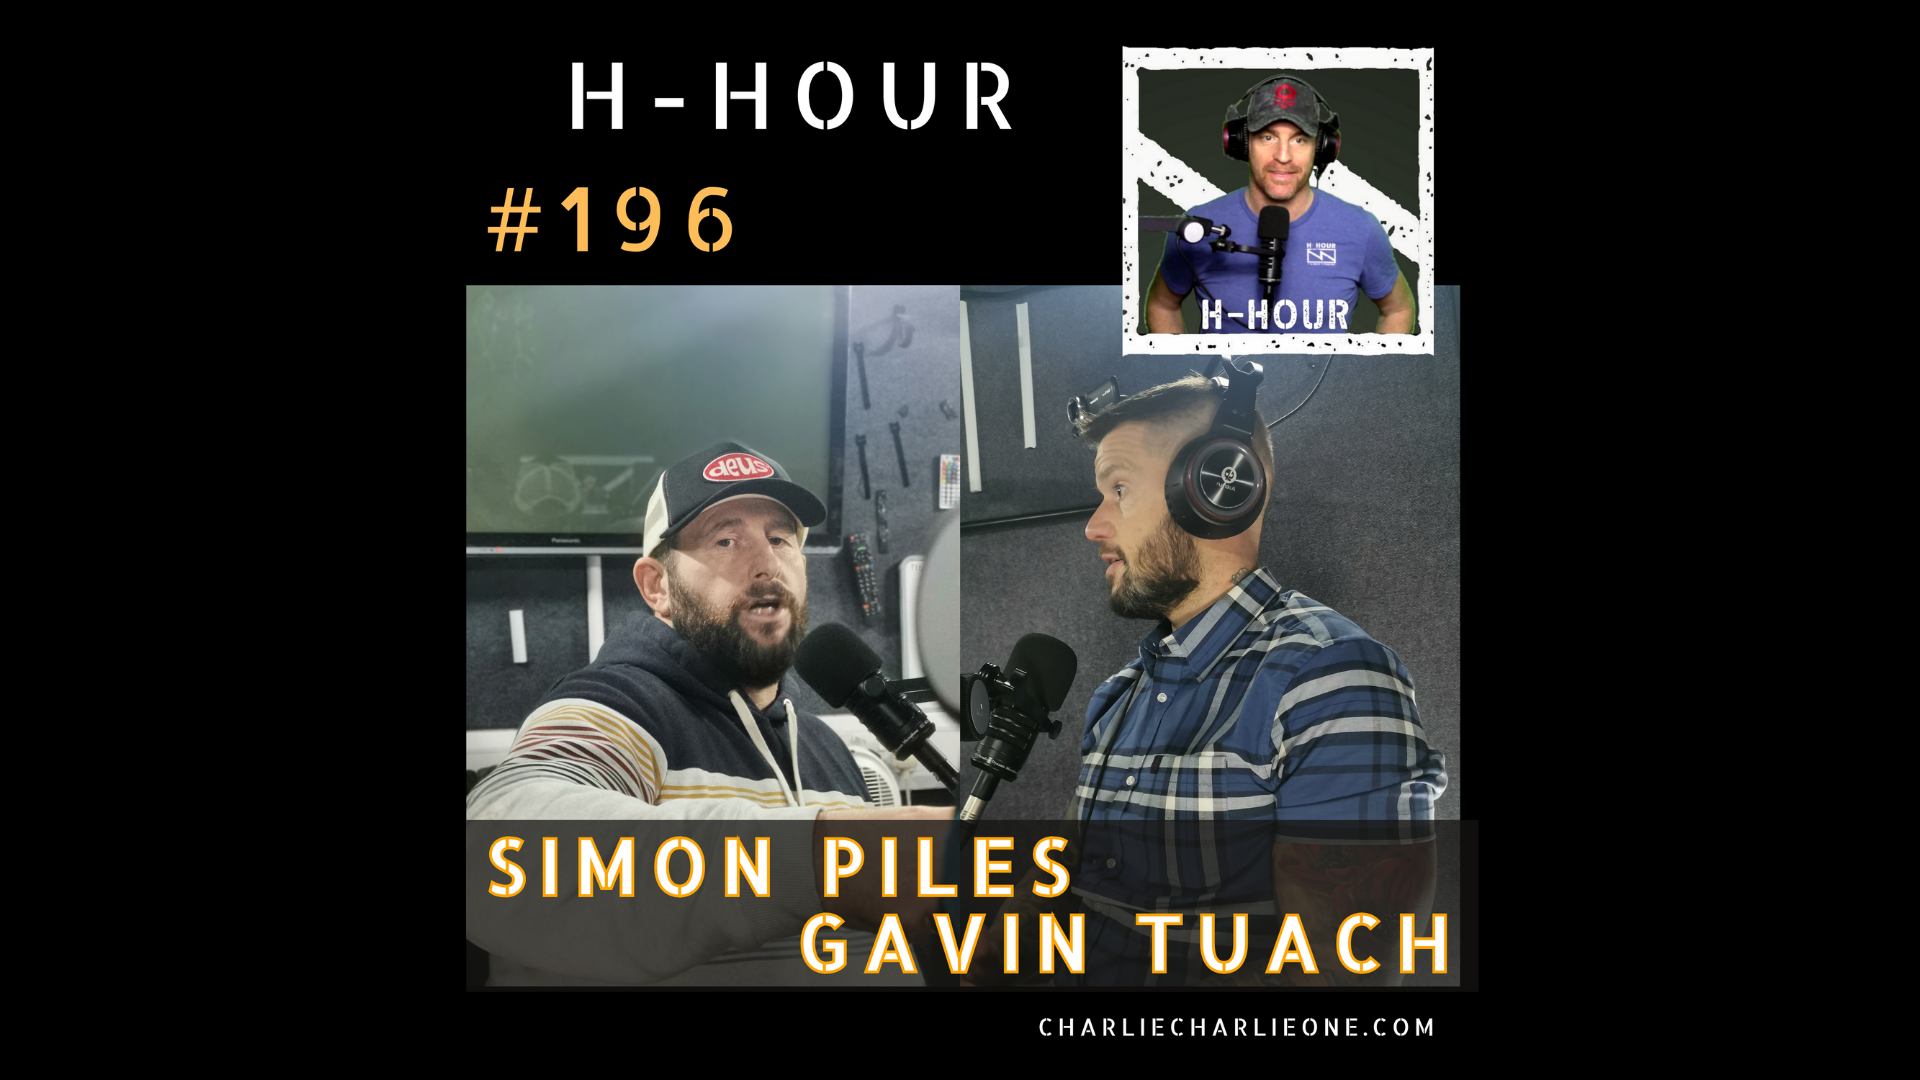 H-Hour #196 cover image Simon Piles and Gavin Tuach